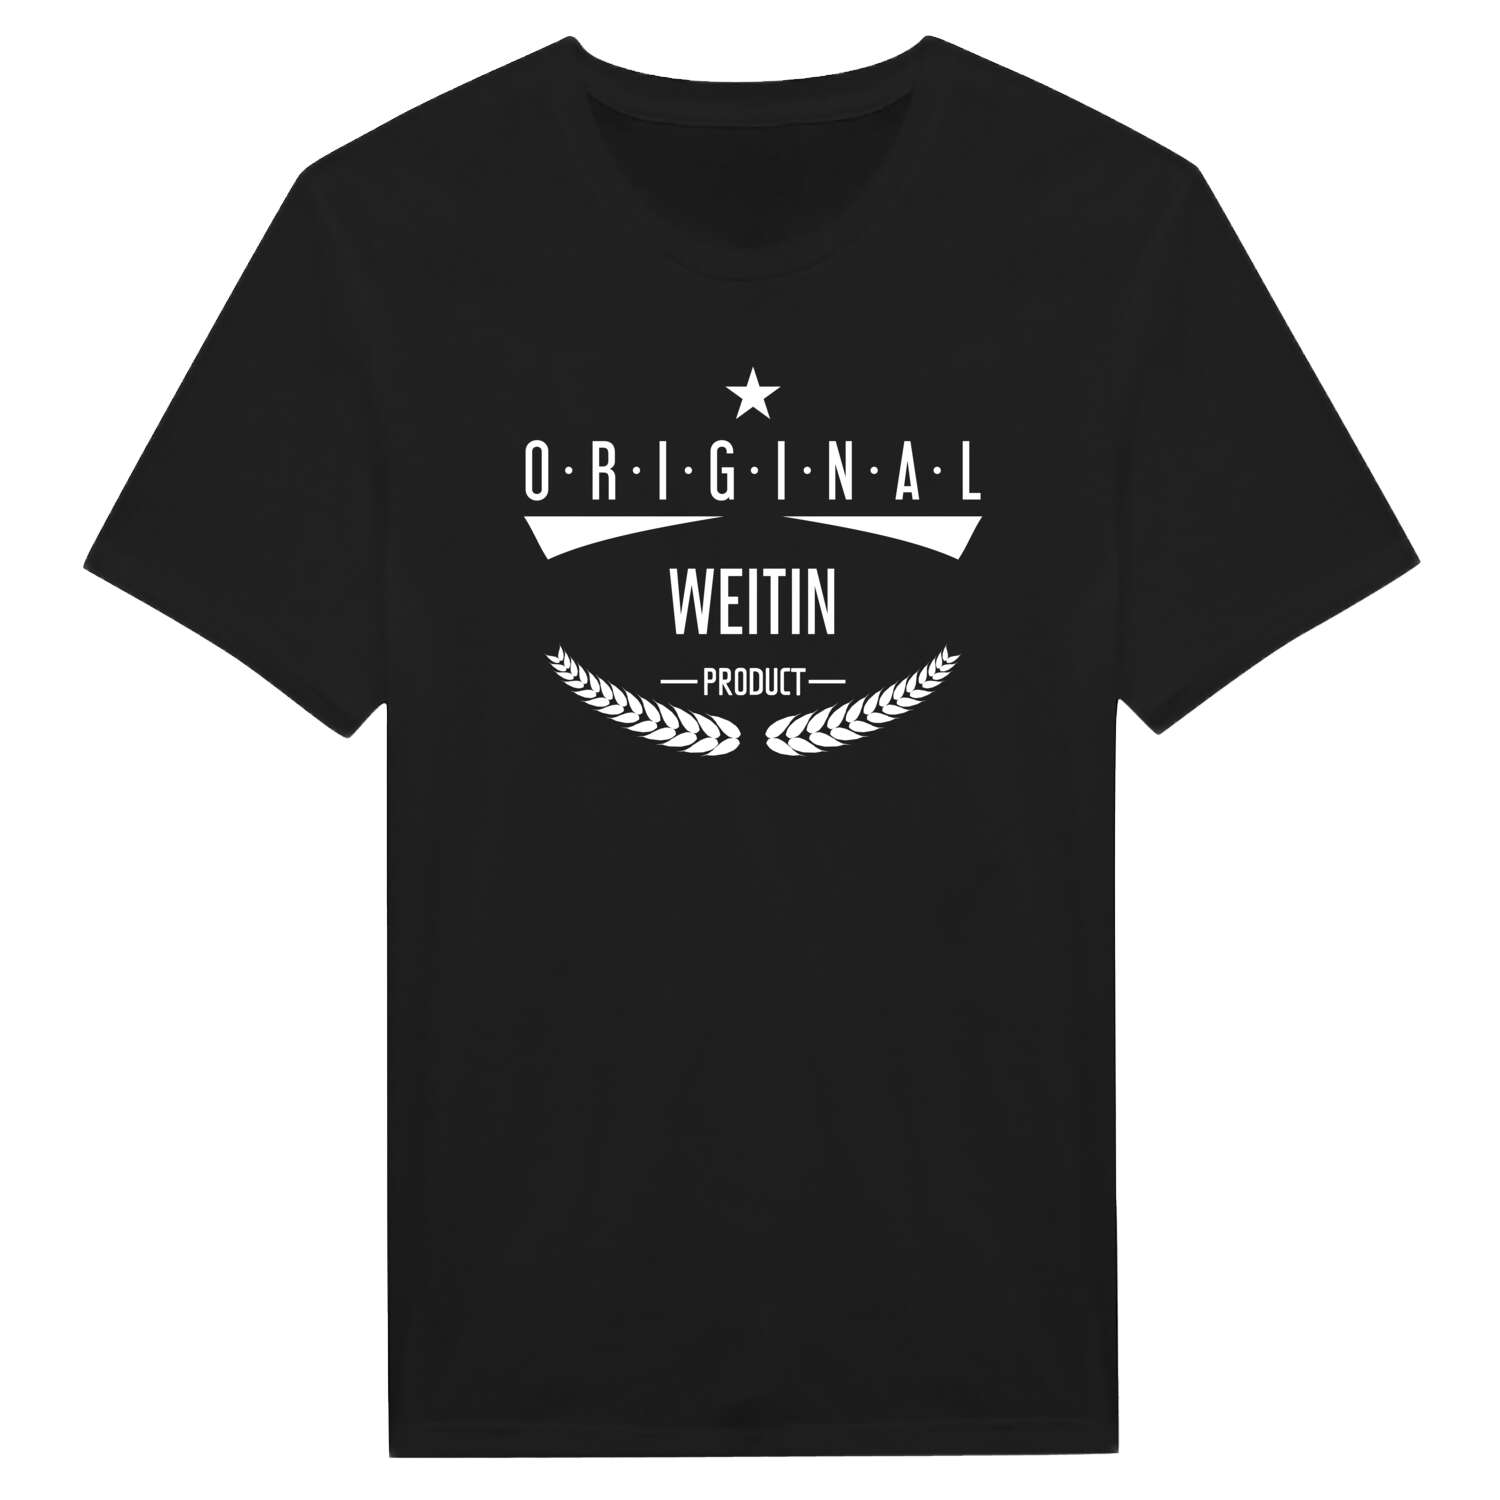 Weitin T-Shirt »Original Product«